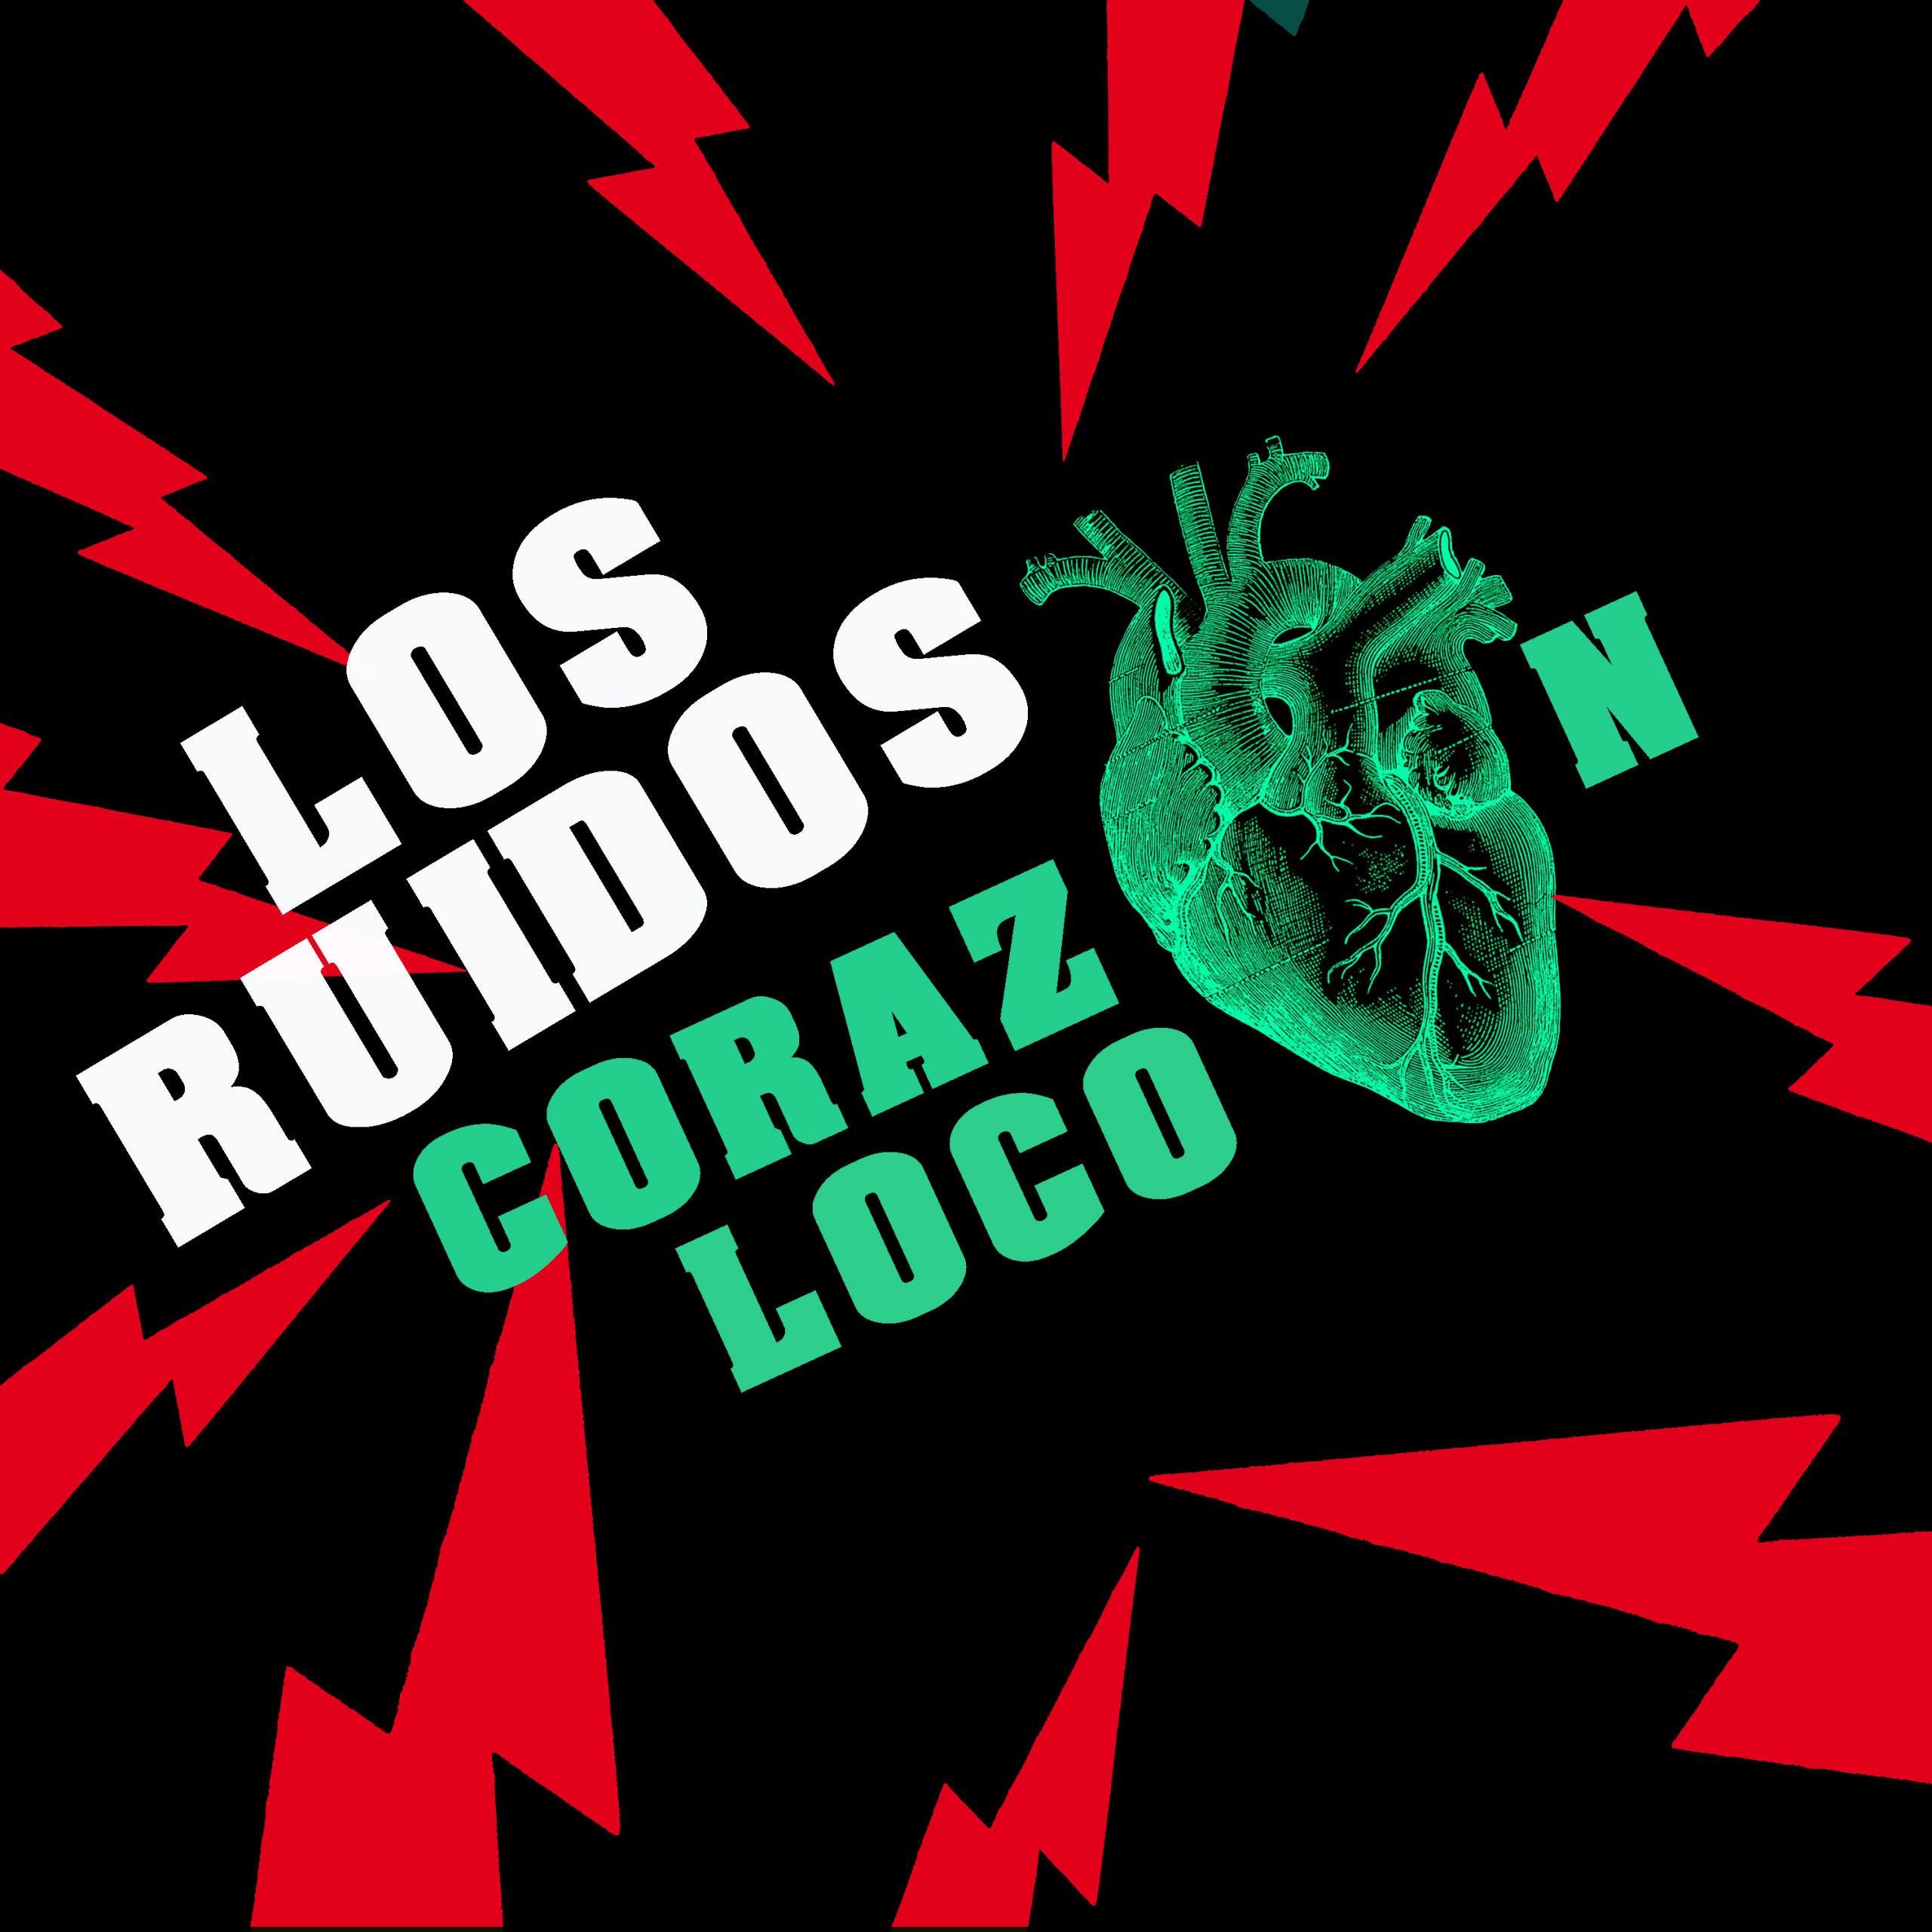 Los Ruidos "Corazón loco", nuevo single